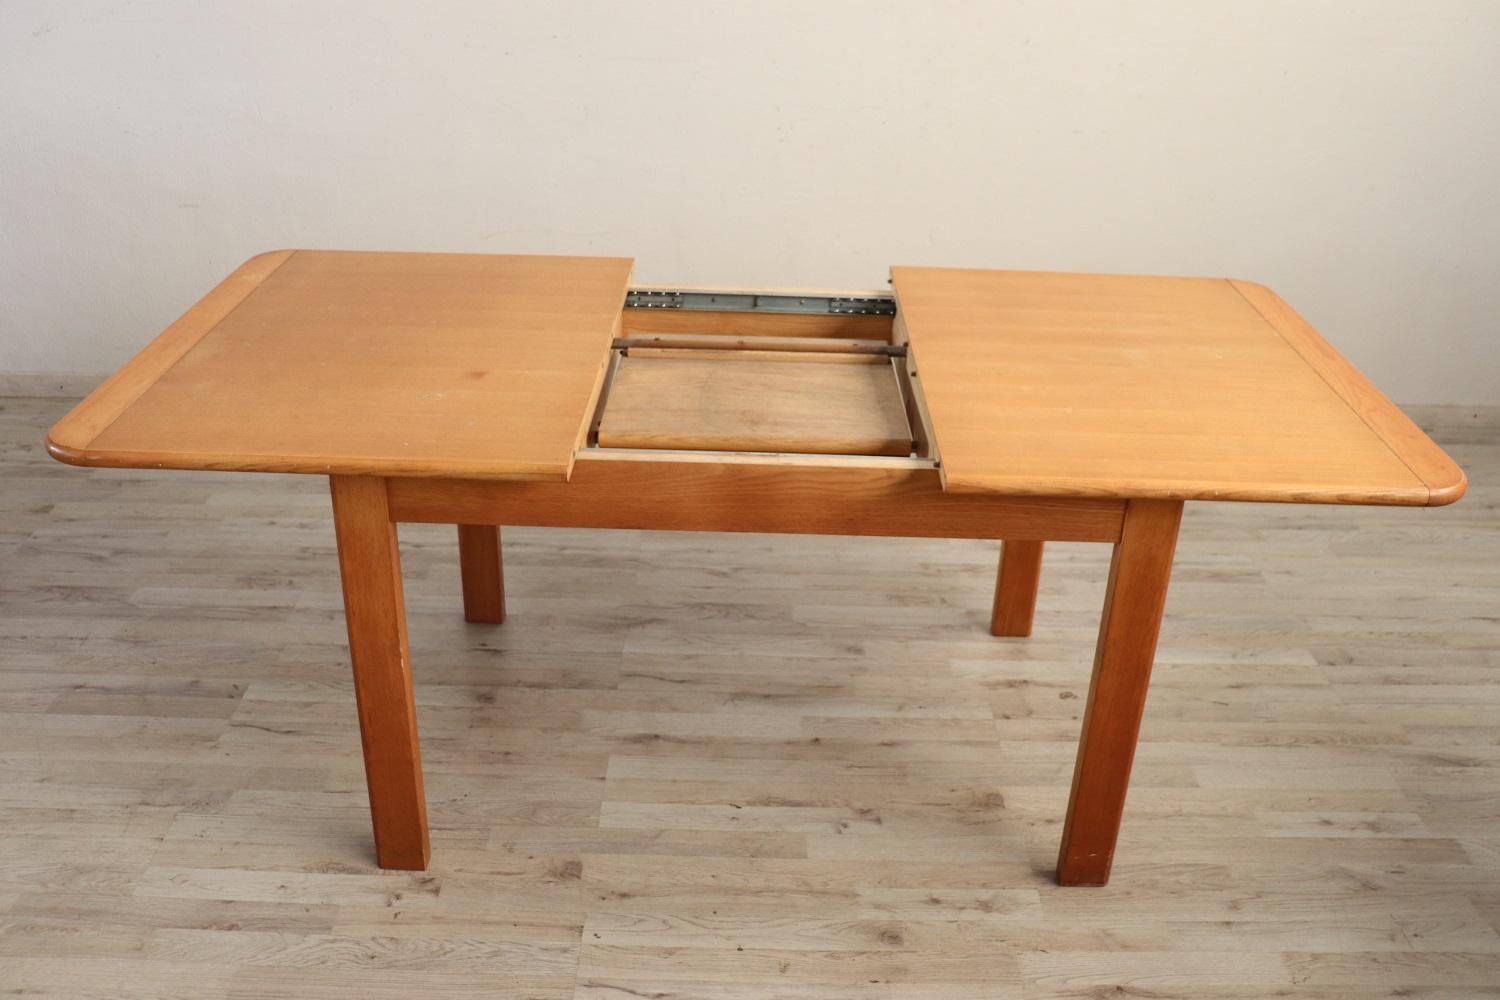 Table longue de salle à manger en chêne massif, design suédois, années 1970. Dimensions table étendue cm 185 / inch 72,83. 
En bon état vintage. Cette table est parfaite pour une maison moderne, son ouverture est pratique et l'extension disparaît à